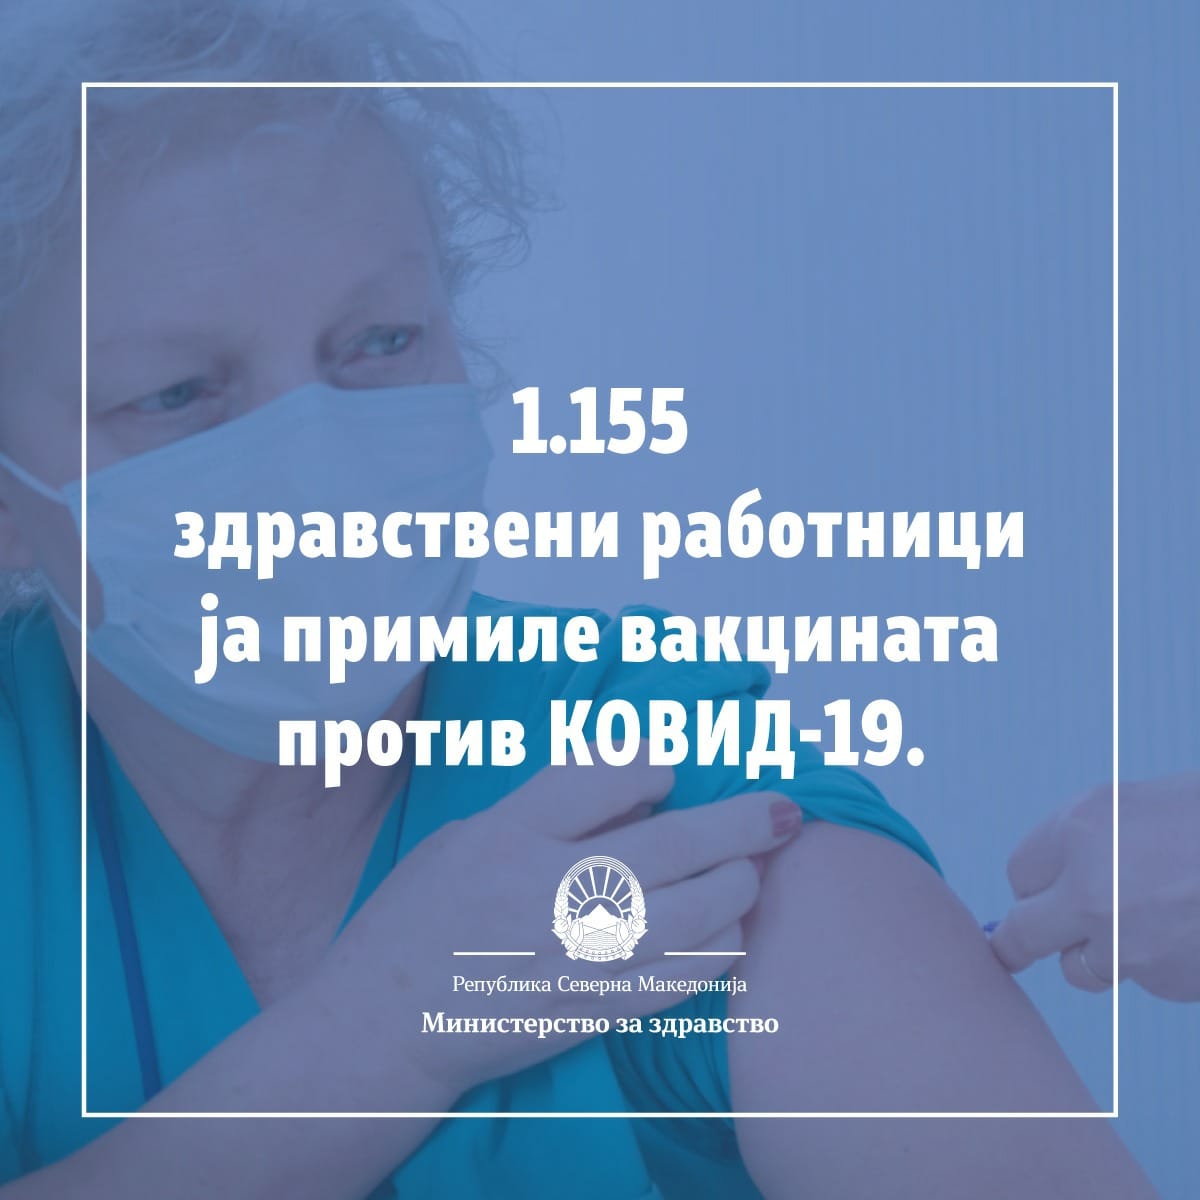 Досега 1.155 здравствени работници ја примиле вакцината против Ковид-19